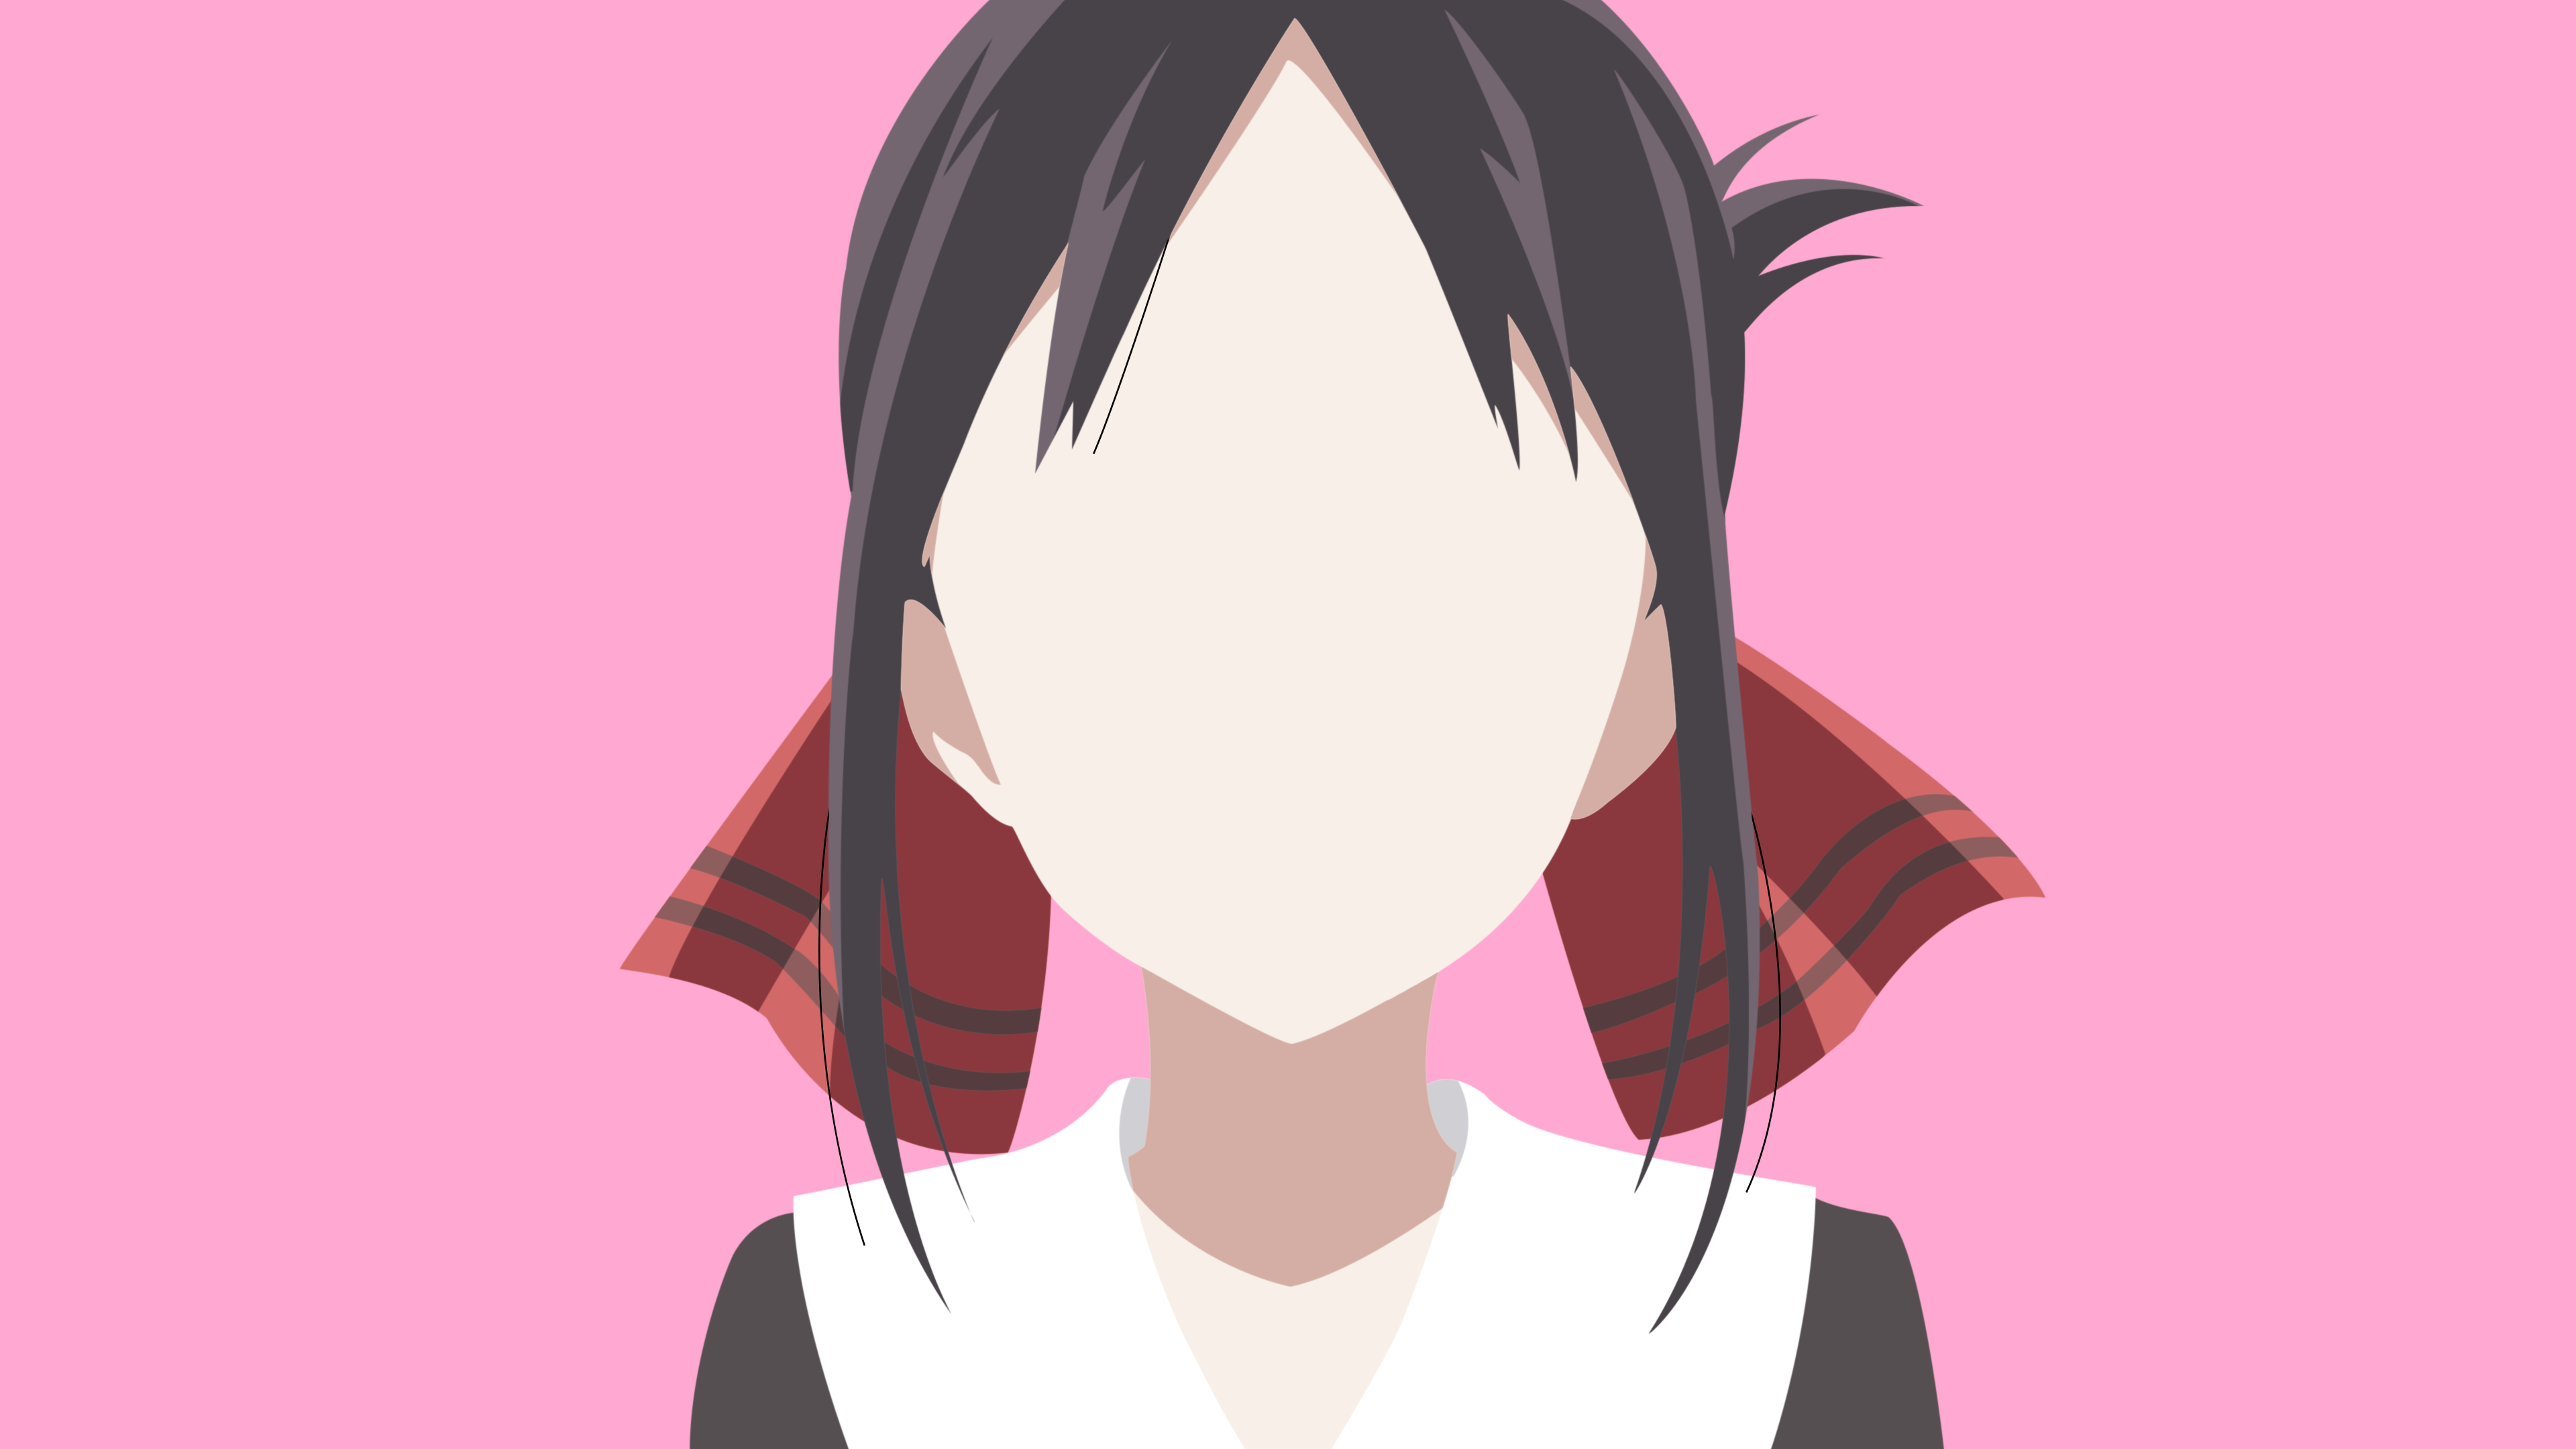 Anime 3840x2160 Kaguya-Sama: Love is War anime girls anime pink background Kaguya Shinomiya